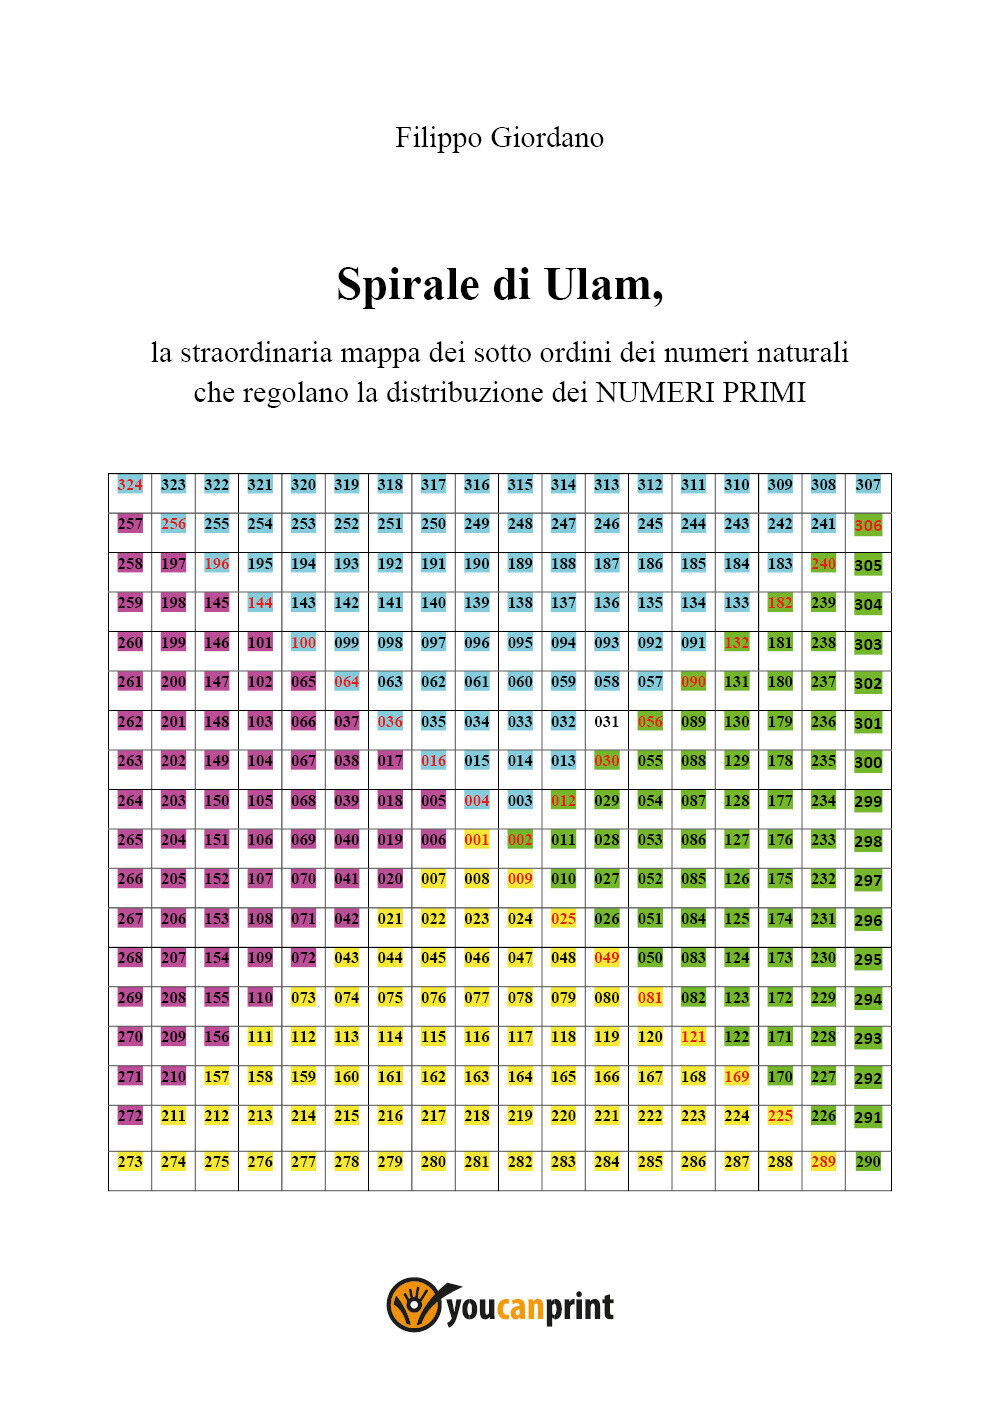 Spirale di Ulam, la straordinaria mappa dei sott?ordini dei numeri naturali che 